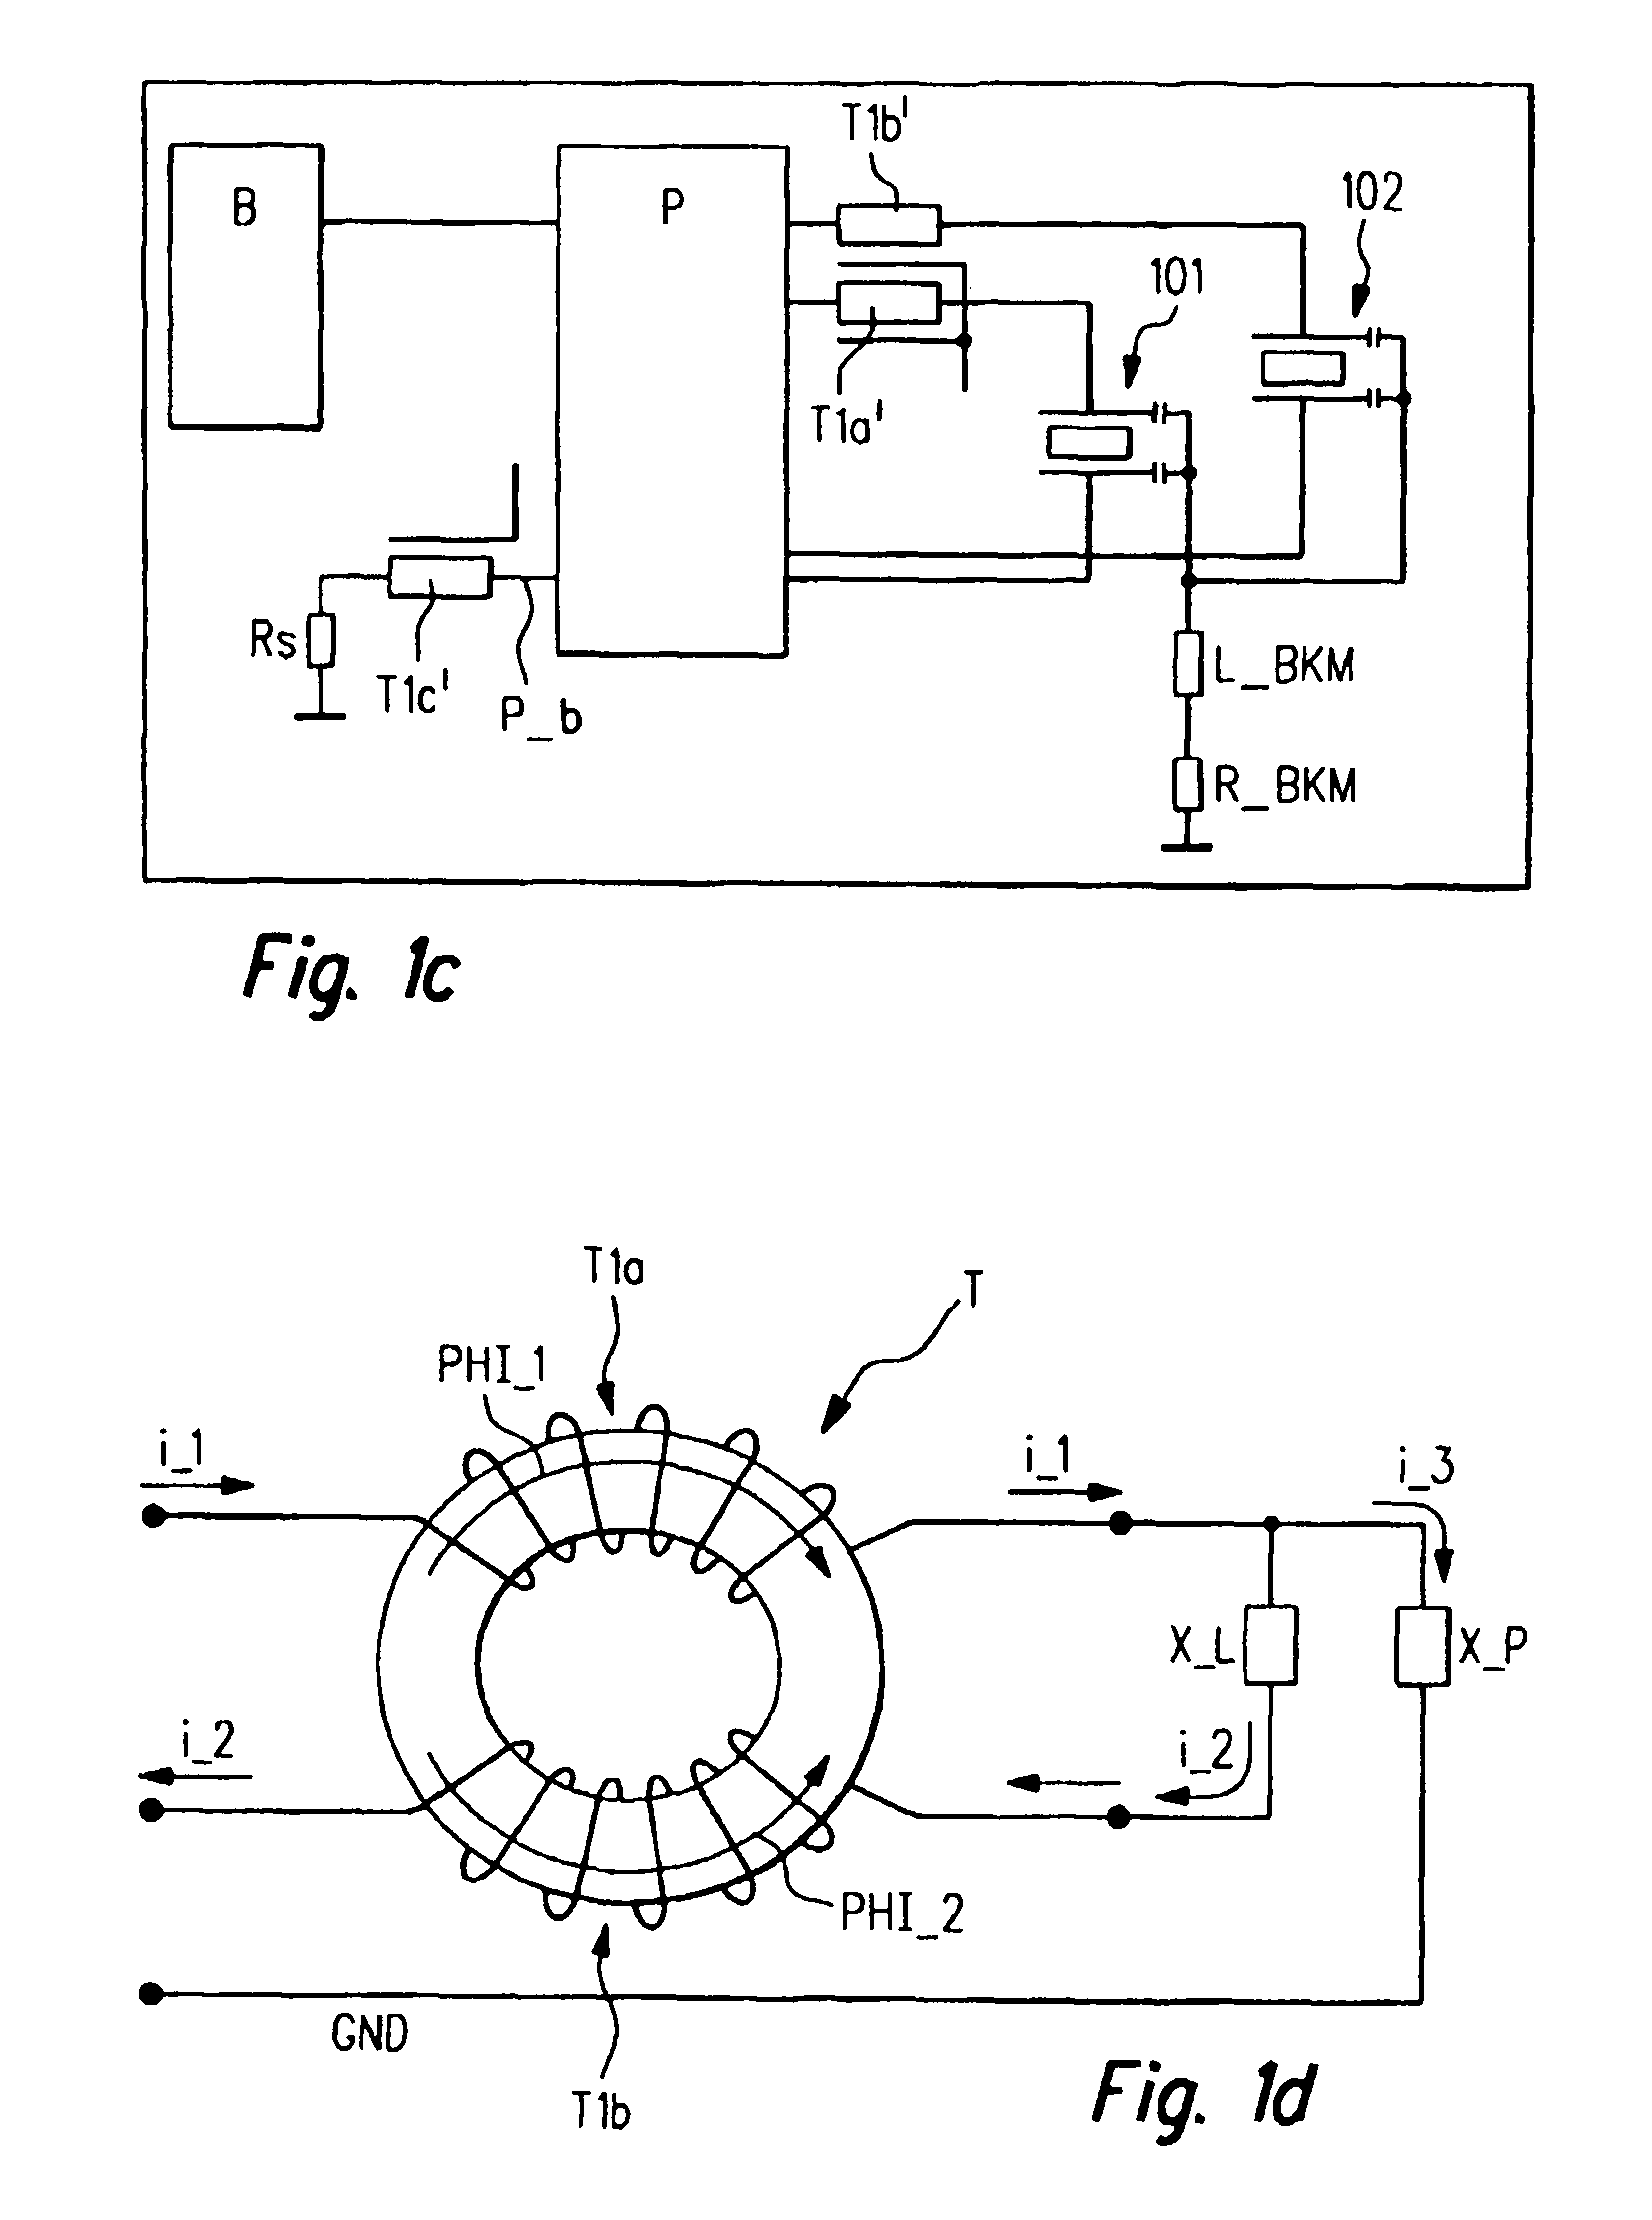 Control circuit for an actuator